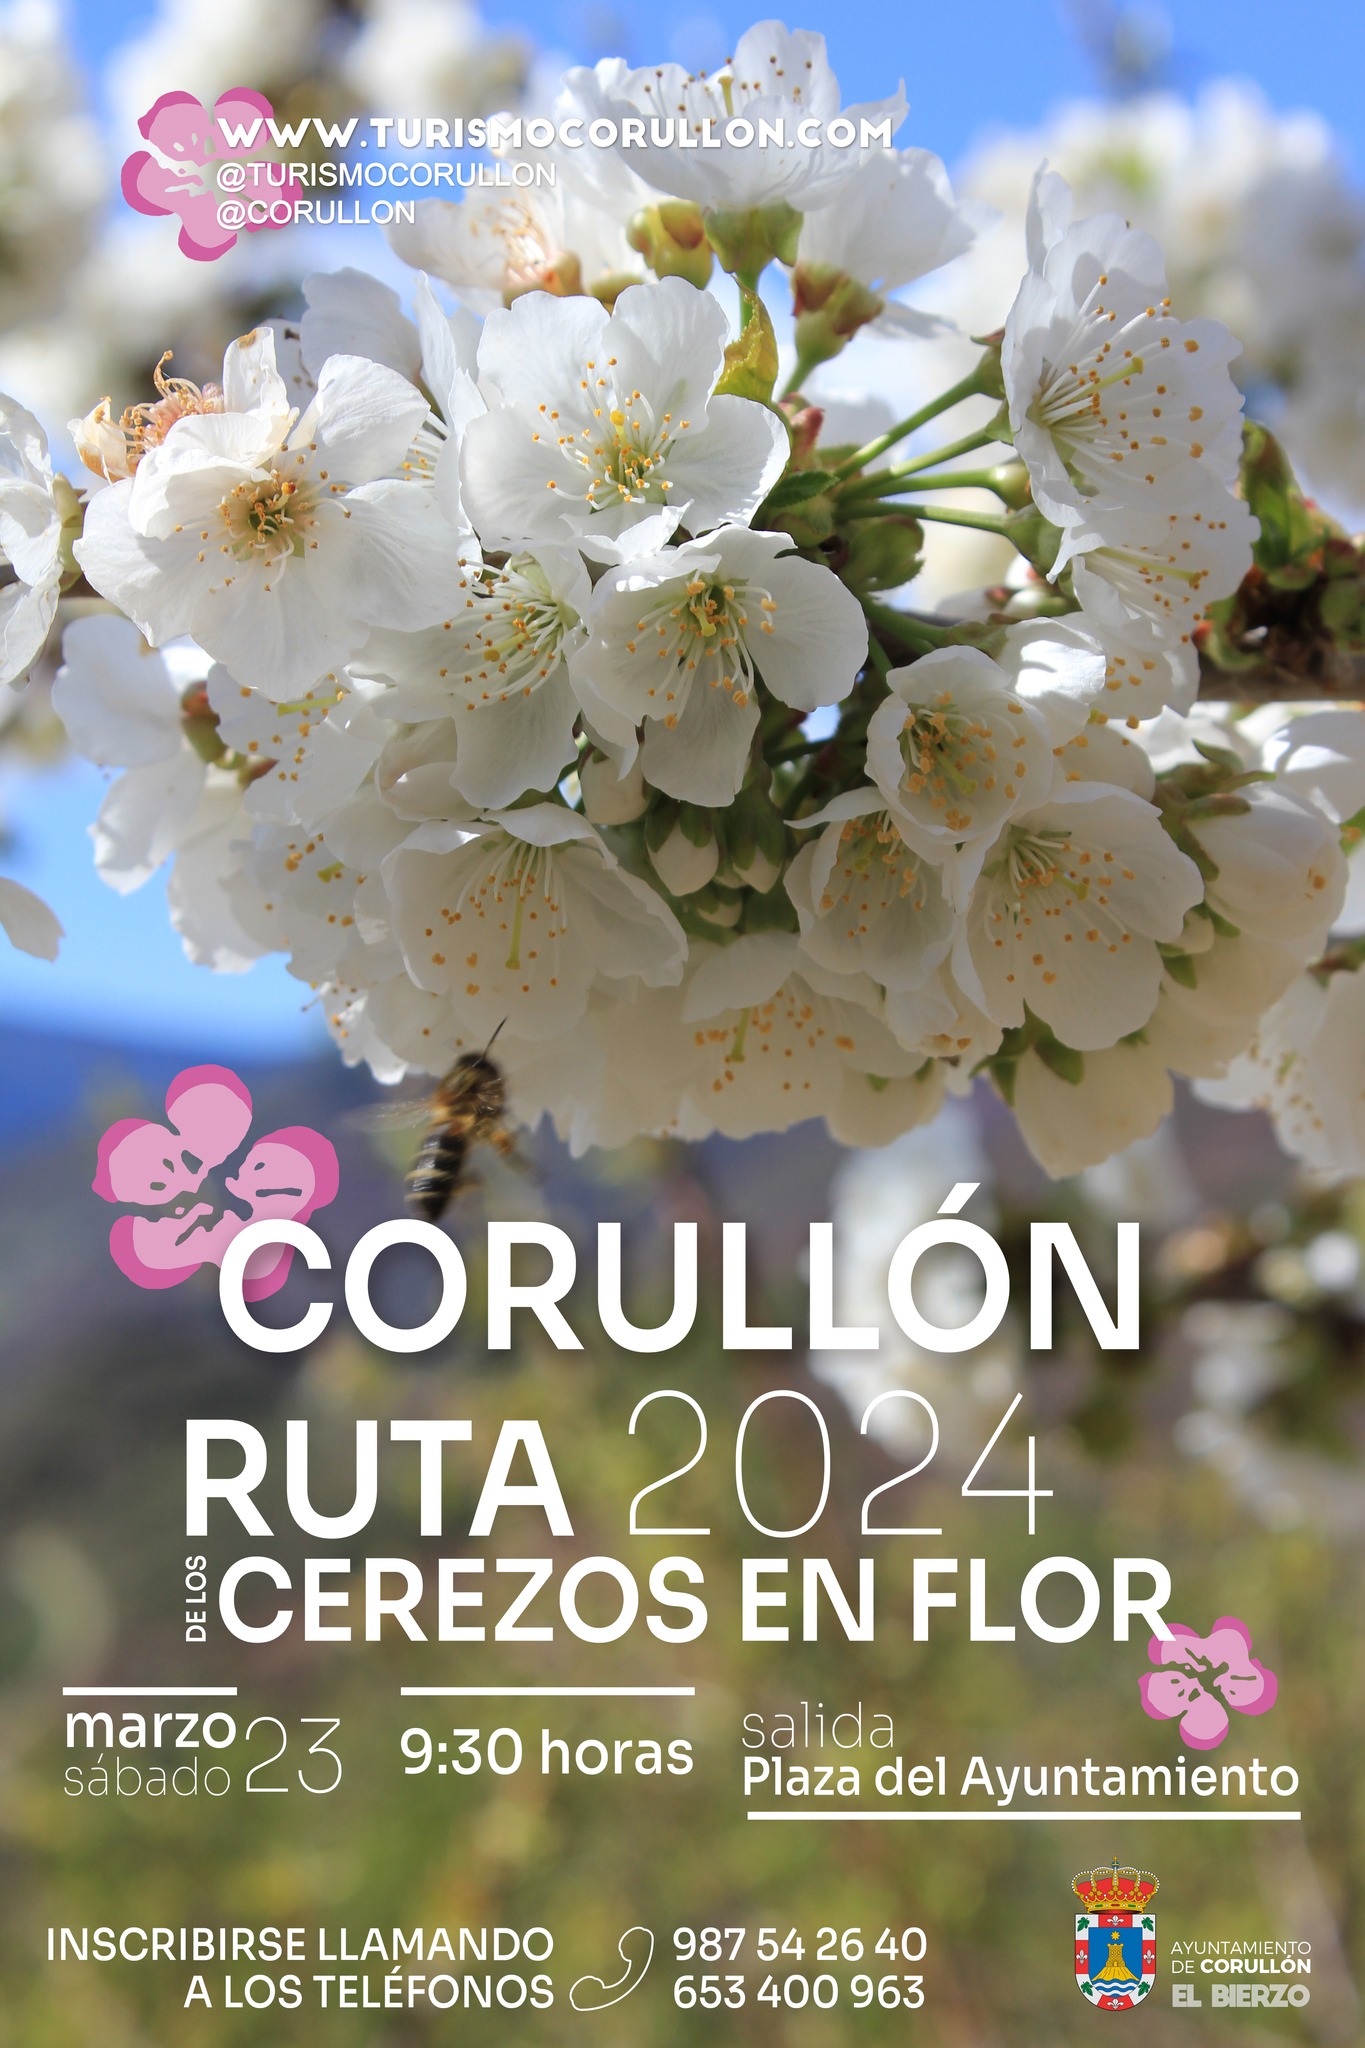 Corullón organiza el sábado una ruta para disfrutar la floración de los cerezos 2